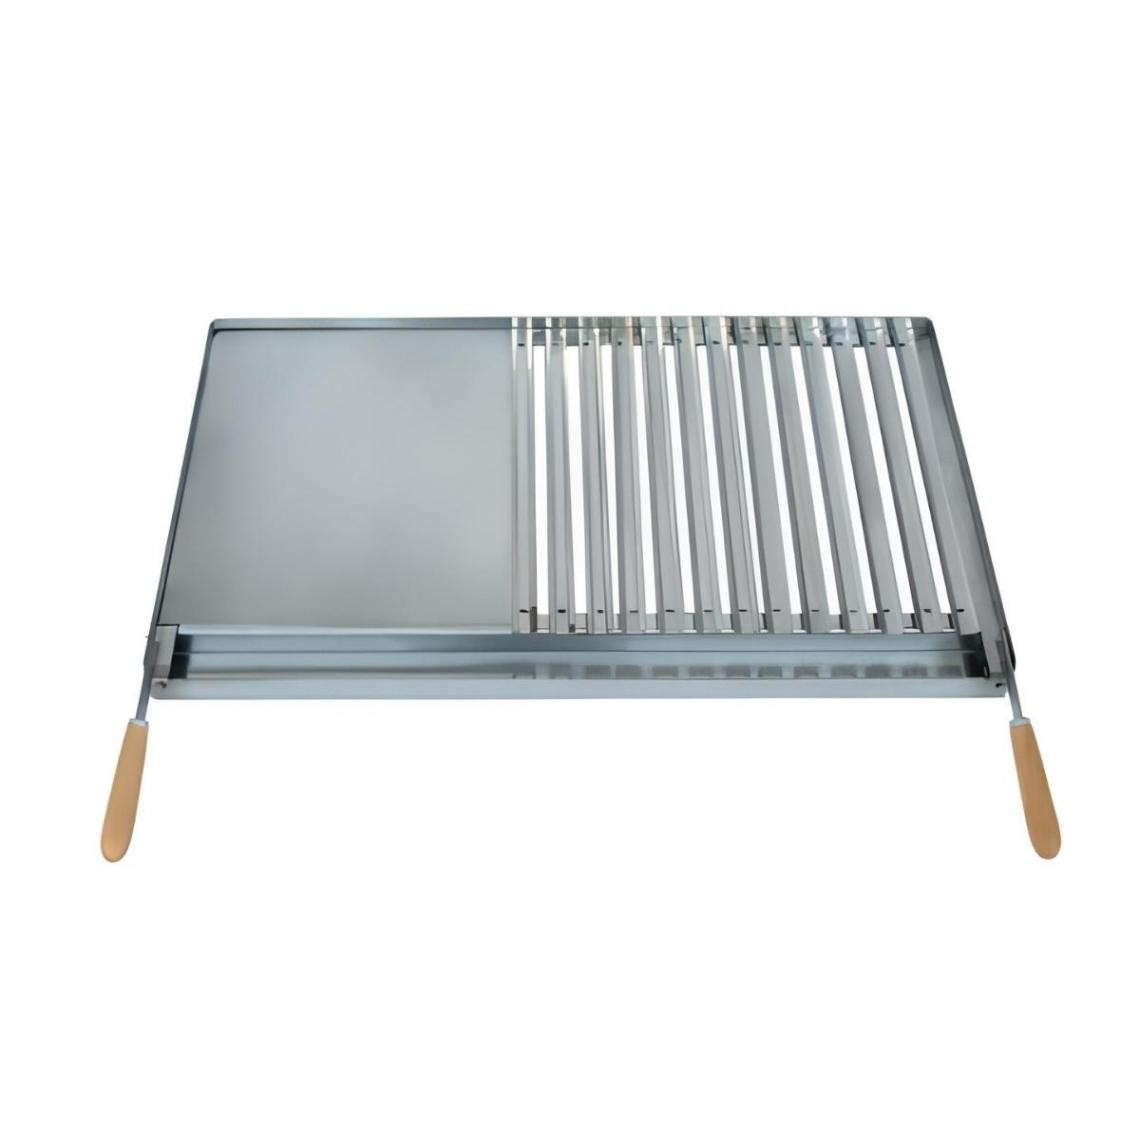 Visiodirect - Grille/Planche avec récupérateur de graisse en Inox coloris Gris - 78 x 43 cm - Accessoires barbecue